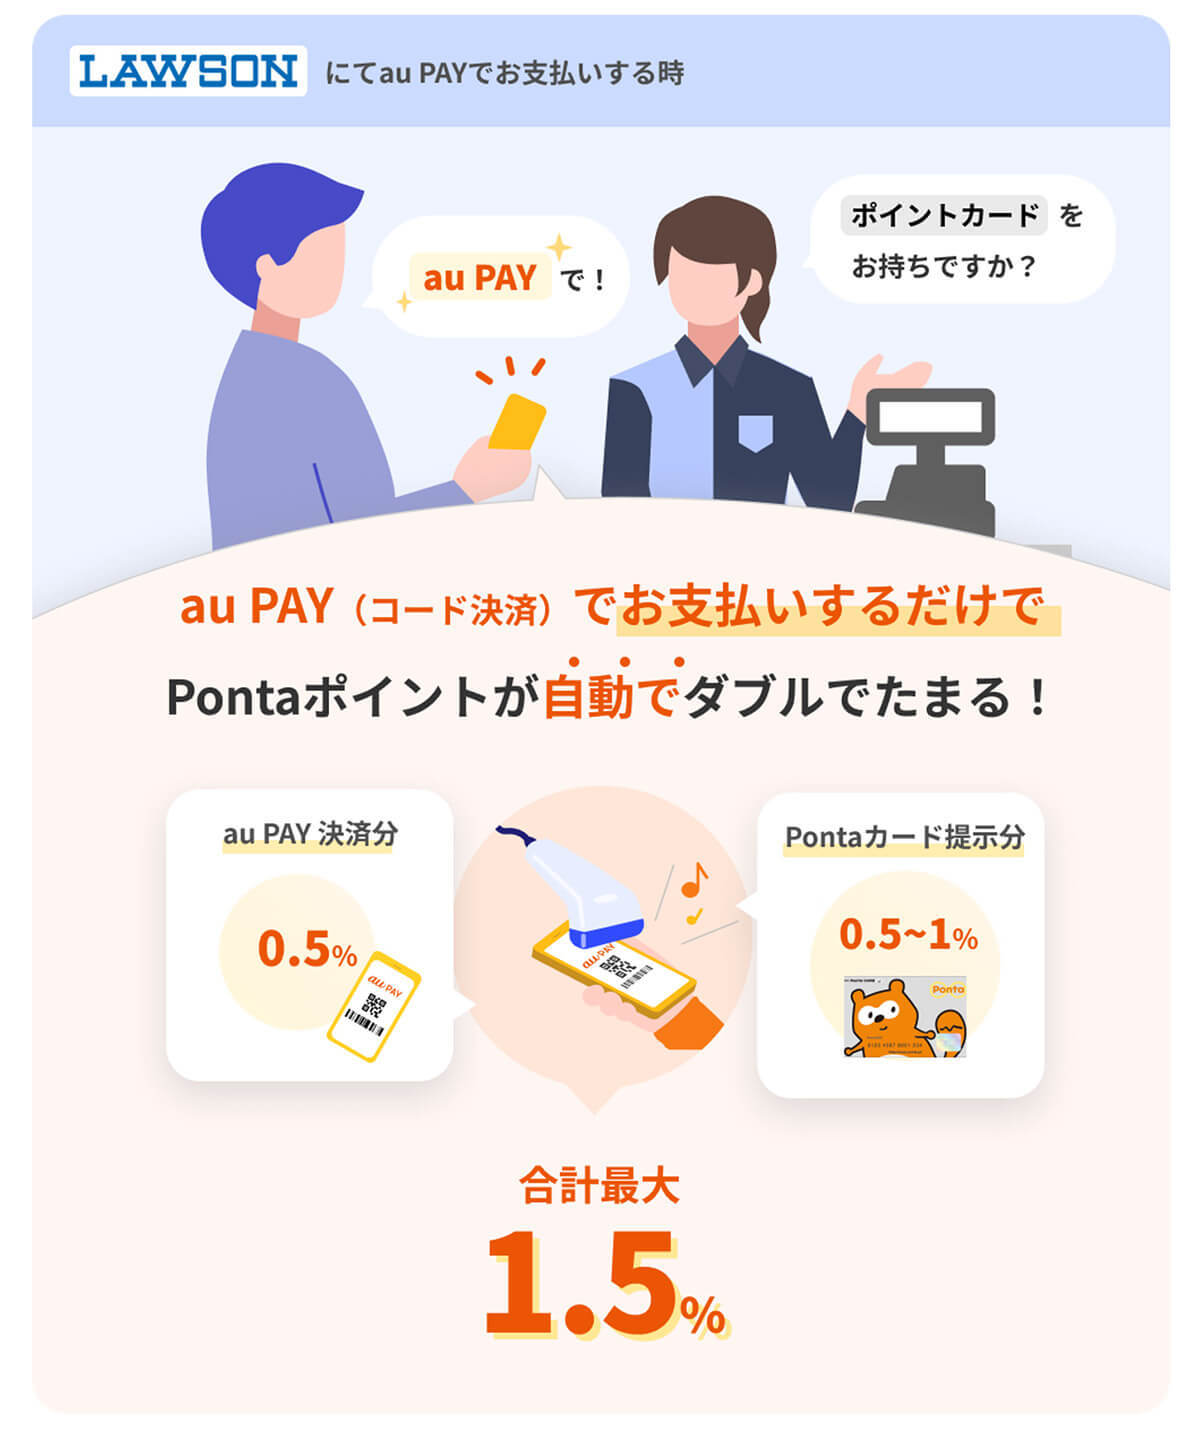 au PAY・PayPay決済で「ポイント二重取り」テクニック！ – ポイントが約2倍になることも!?